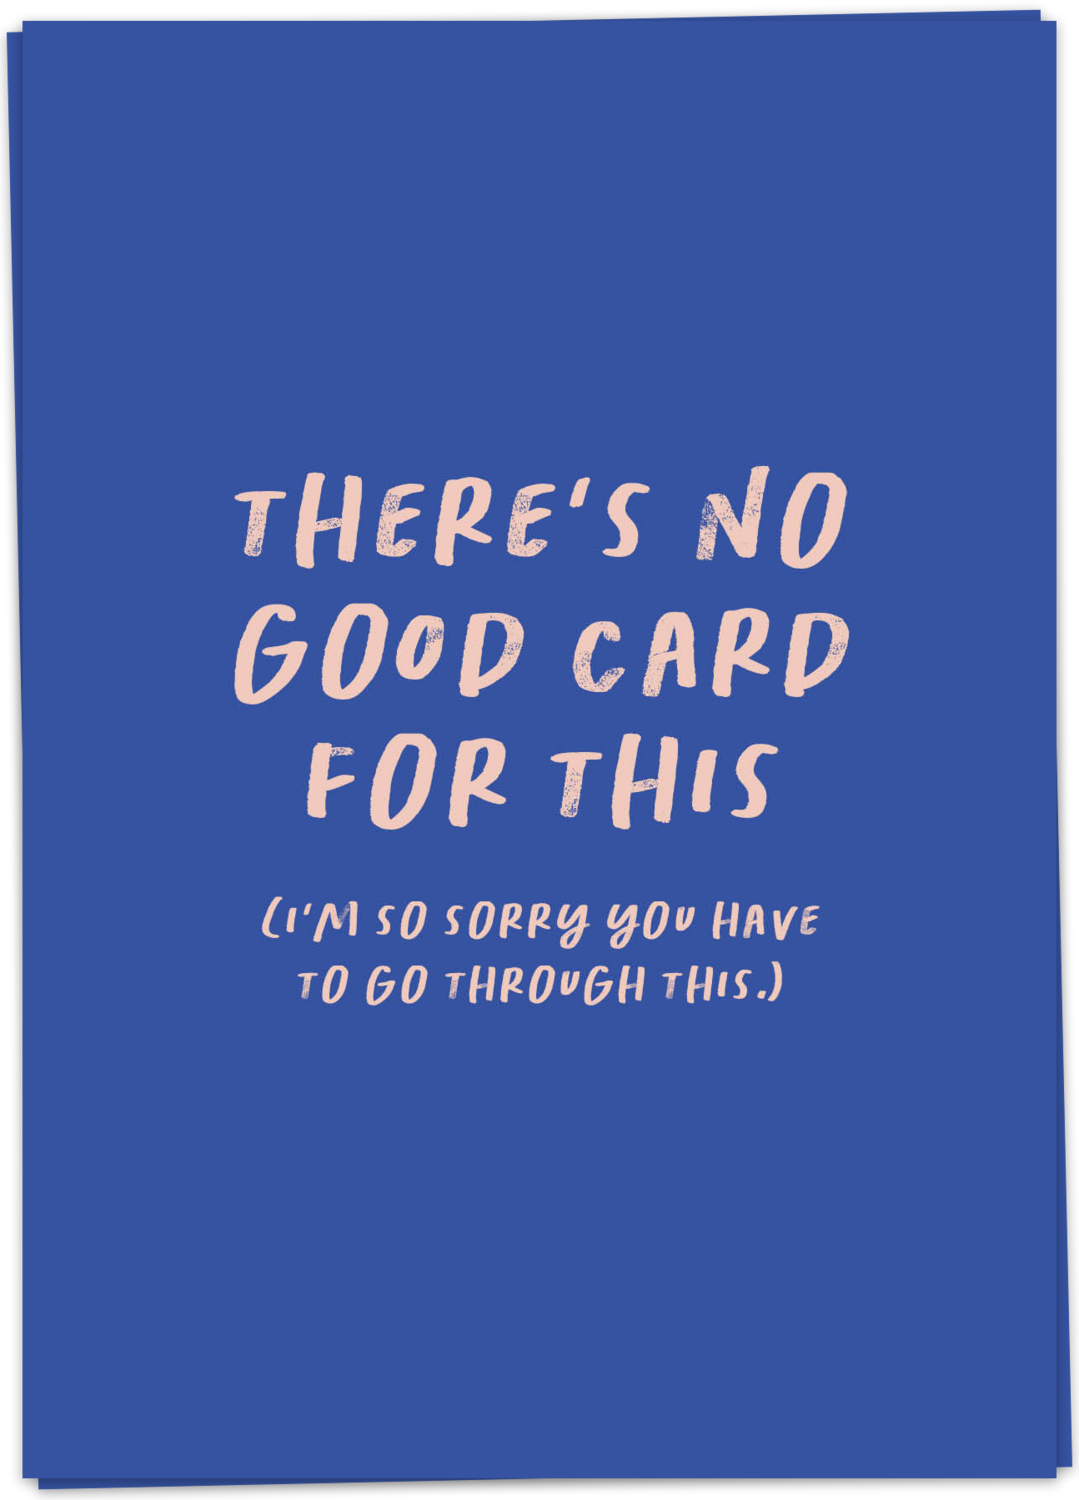 No good card